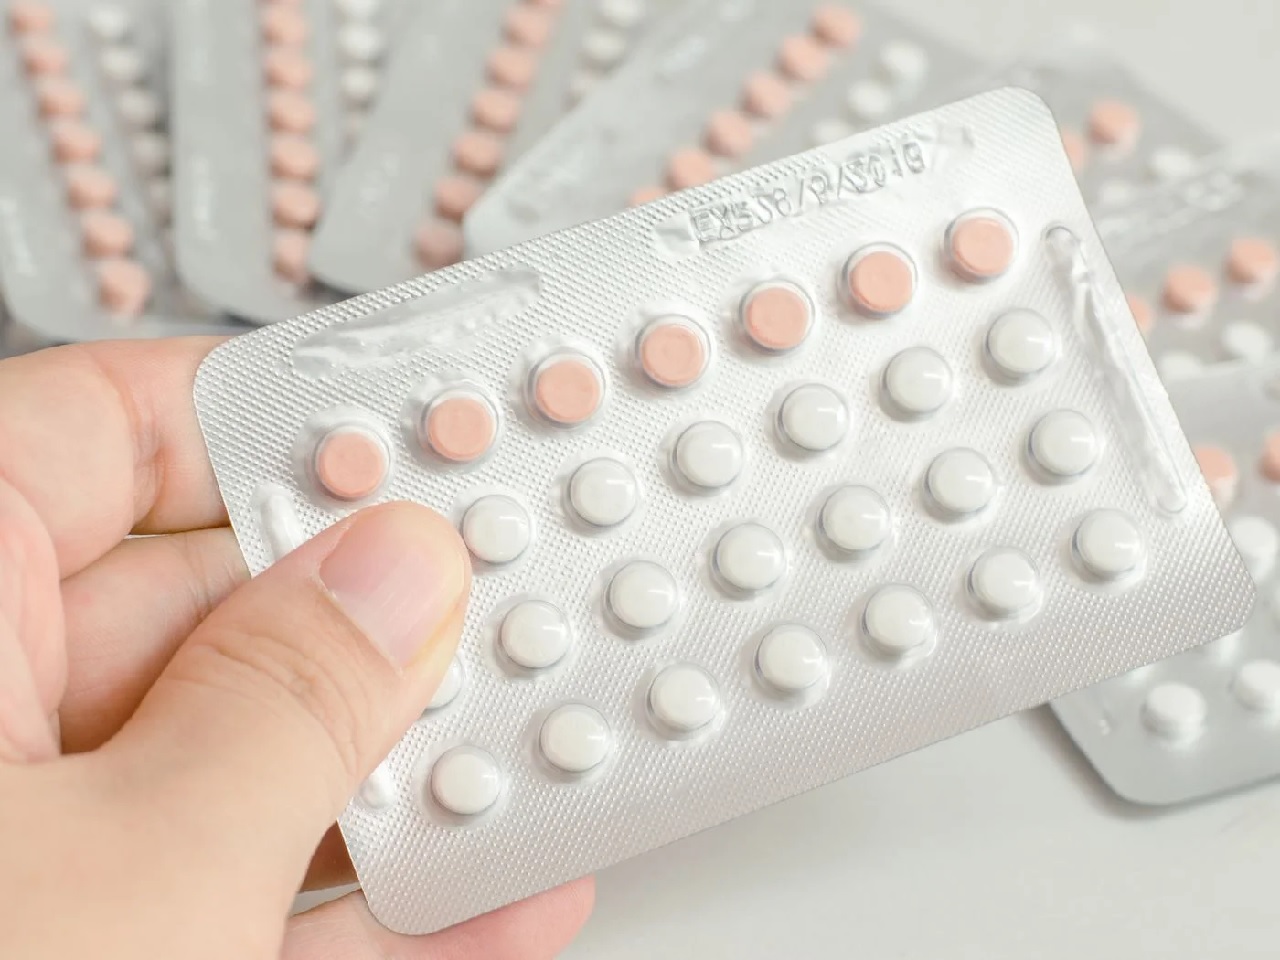 Các biện pháp uống thuốc tránh thai 1 tháng có kinh 3 lần hiệu quả và an toàn